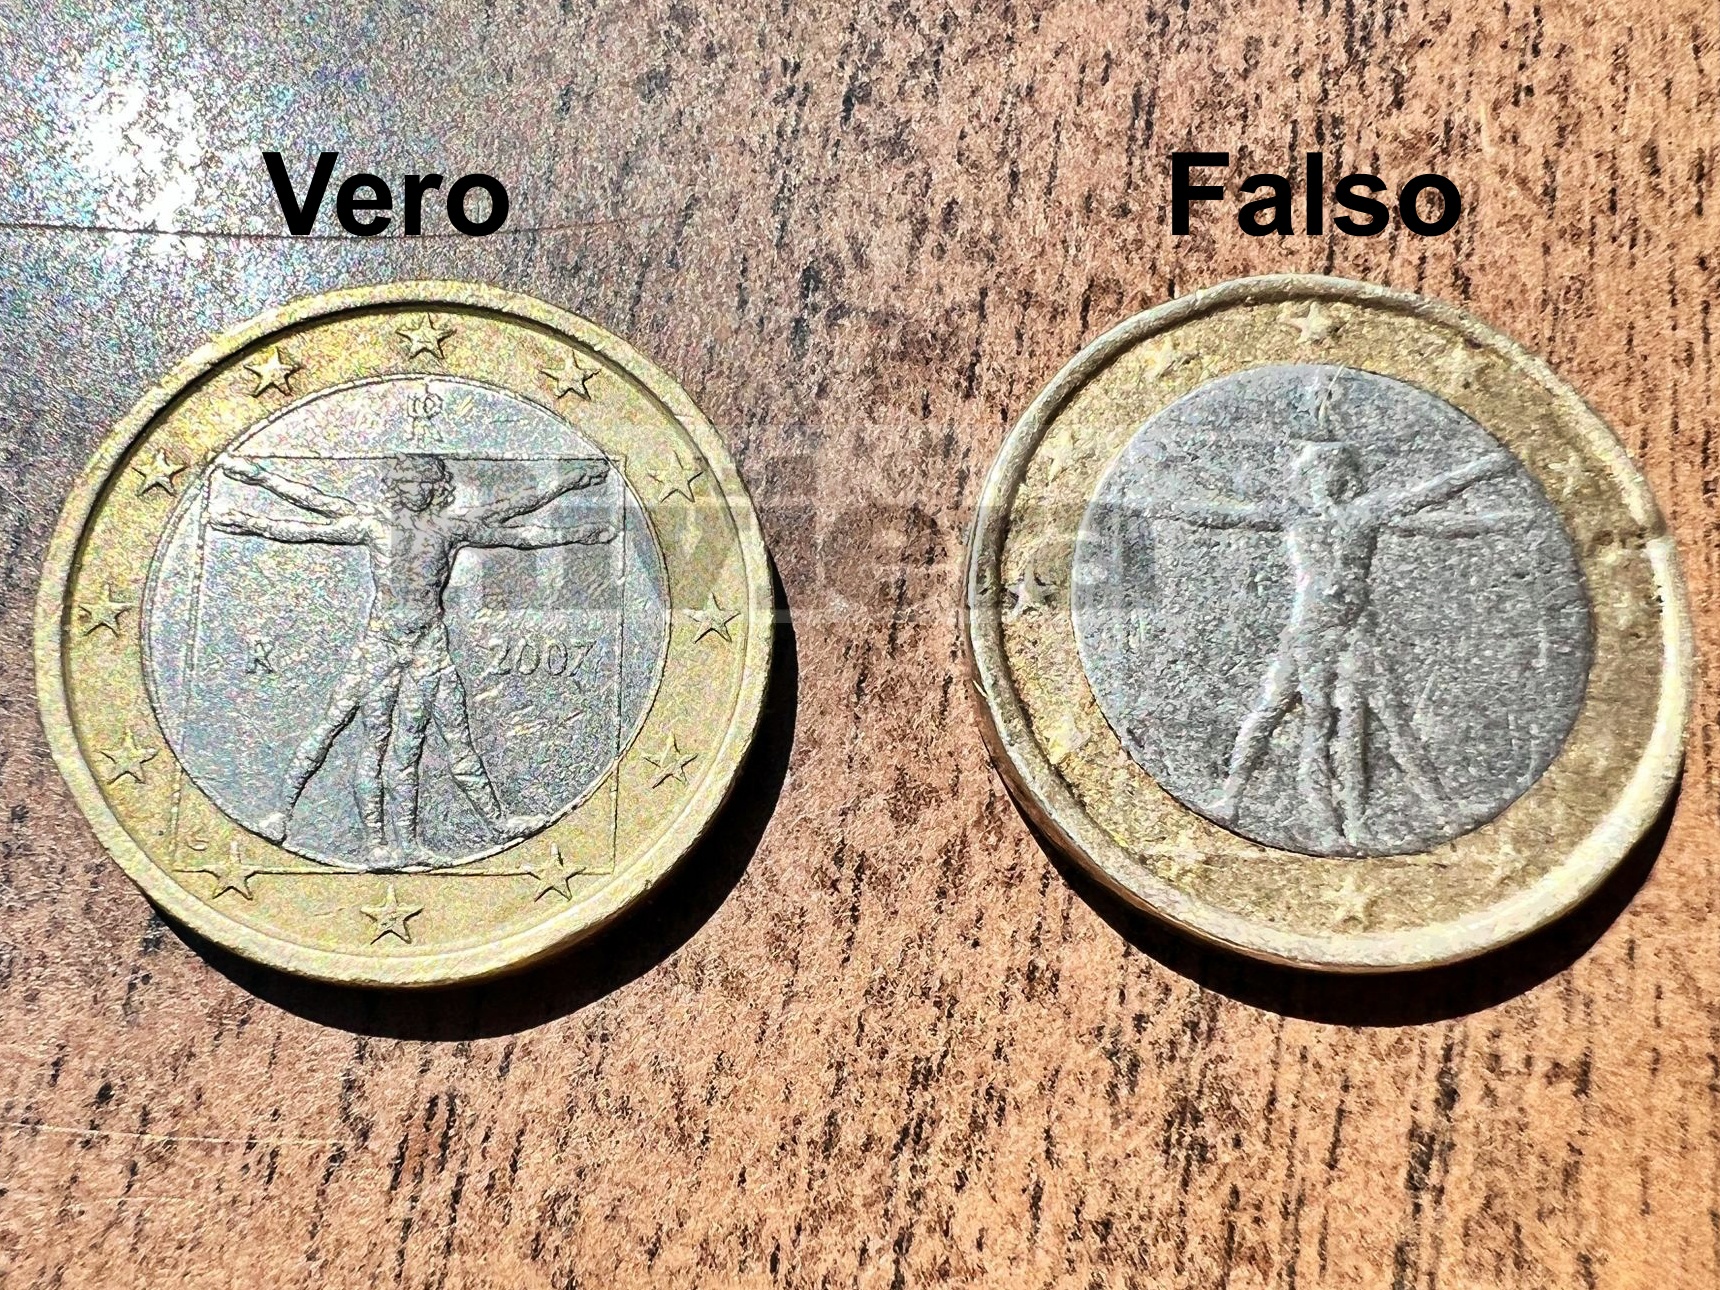 Attenzione alle monete da 1 euro false, ne girano parecchie: ecco